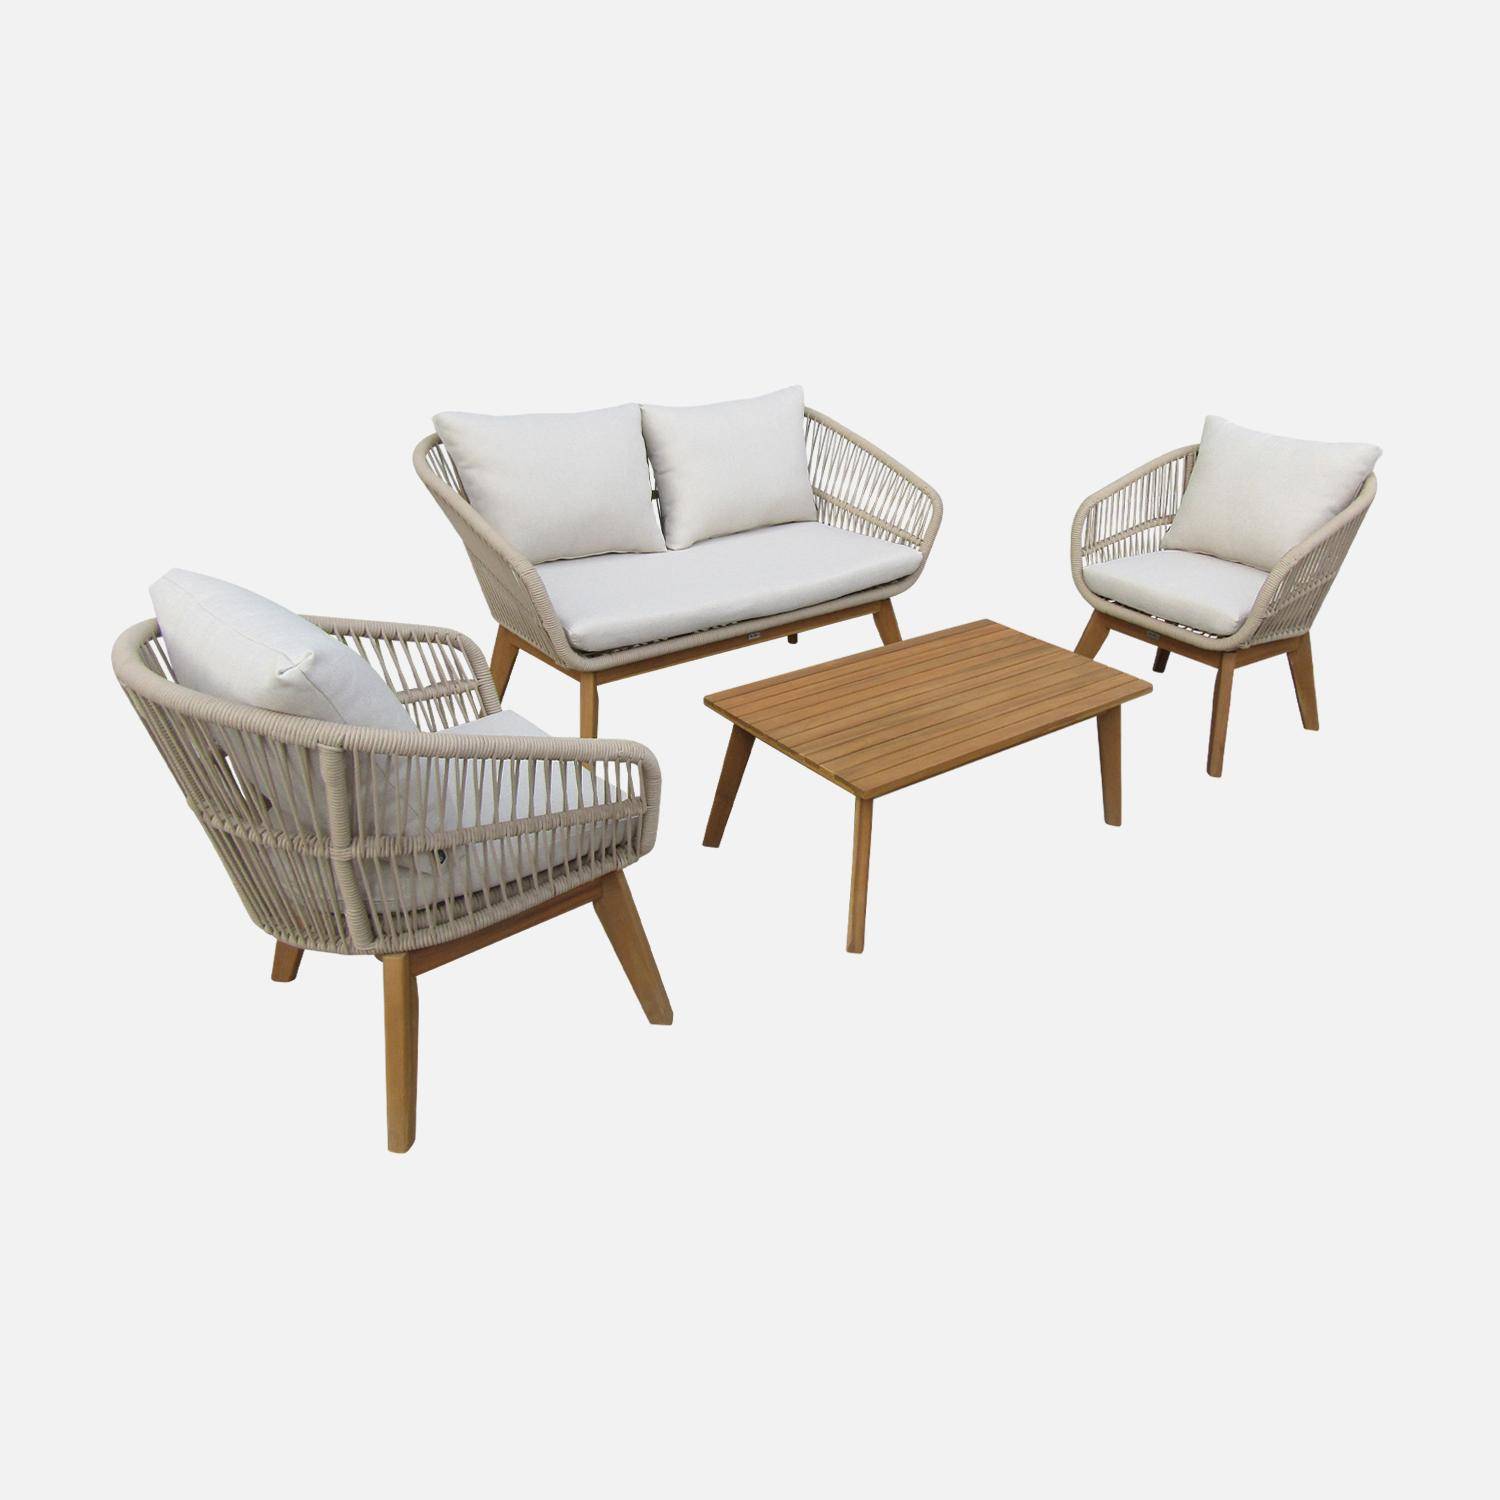 Gartengarnitur 4 Sitze - ROSARIO - aus geflochtenen Seilen, Holz und Aluminium, grau / beige Kissen Photo3